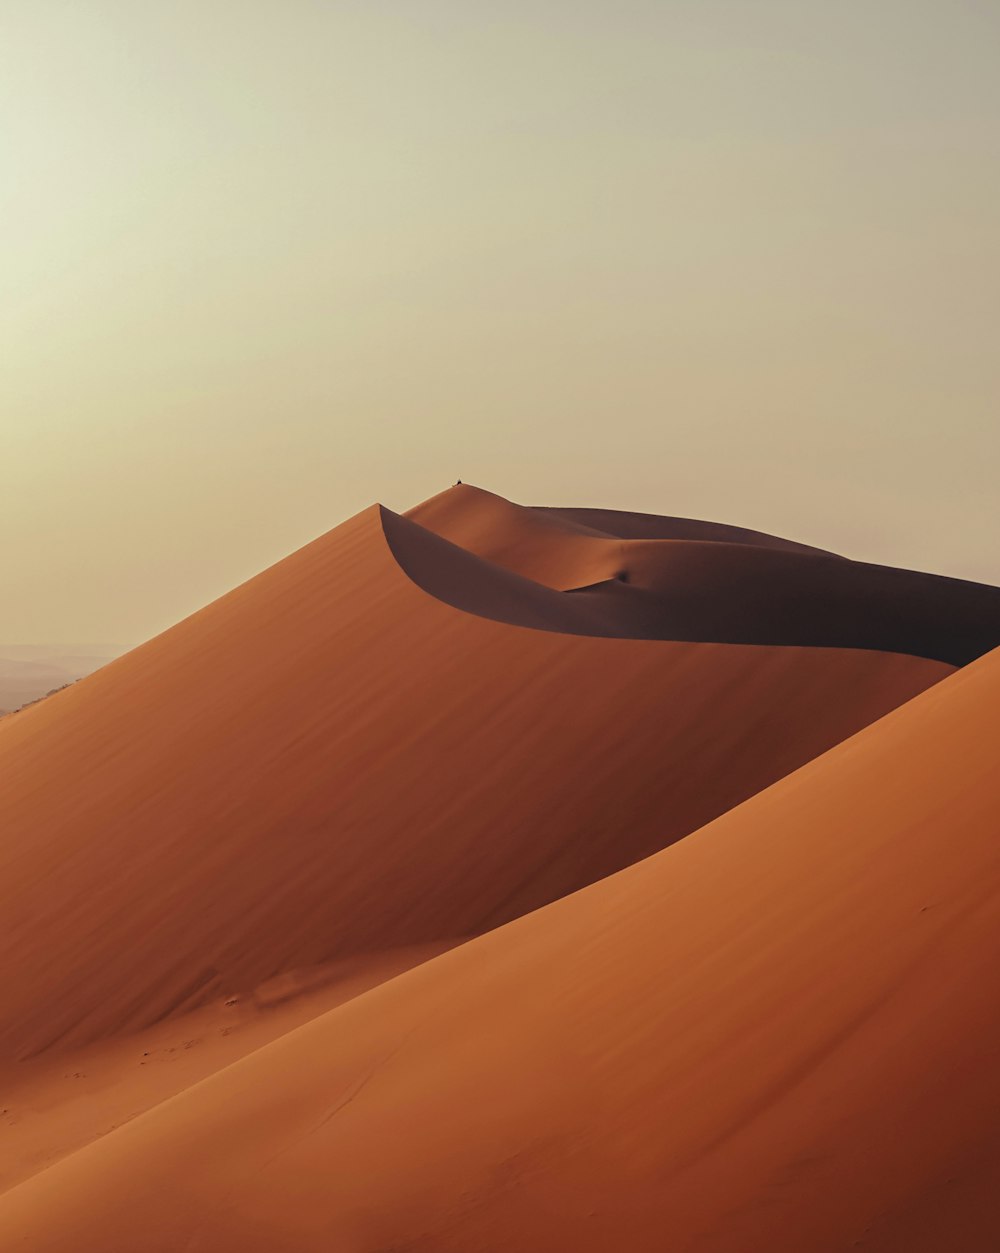 사막 한가운데에 있는 큰 모래 언덕